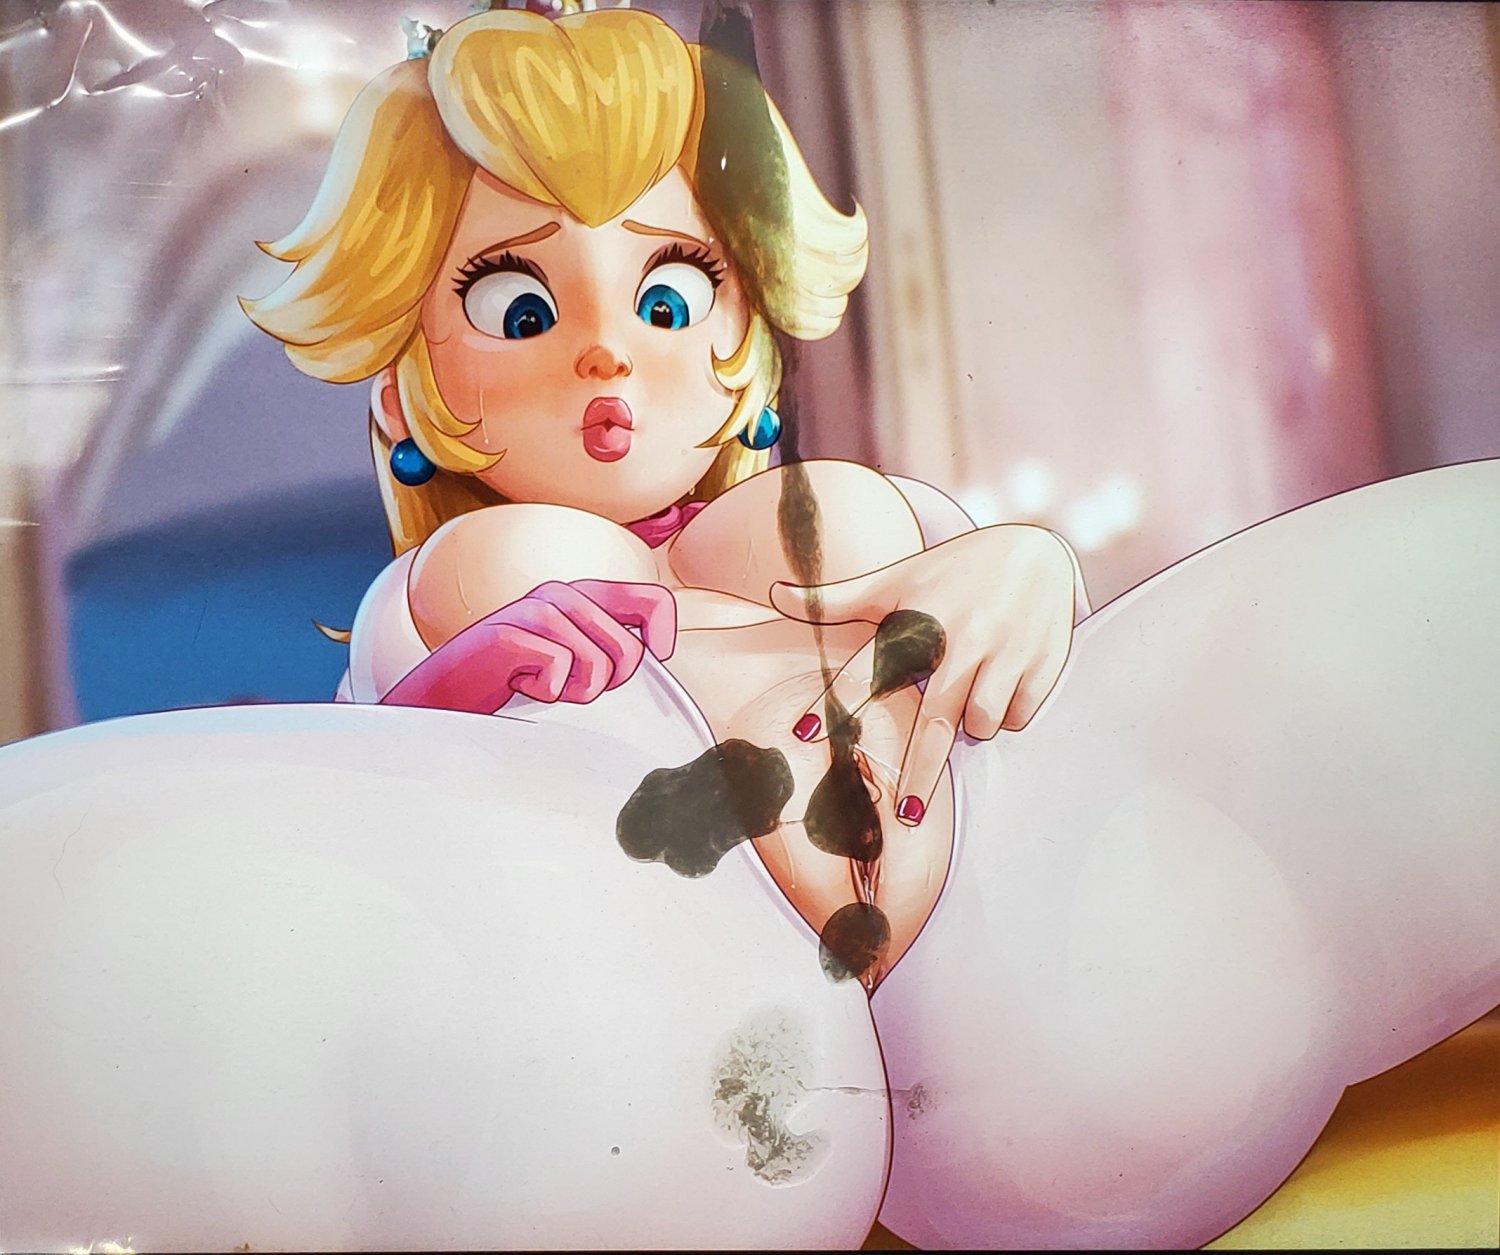 Mario Princess Peach Porn - Princess Peach (Mario) - Porn Videos & Photos - EroMe